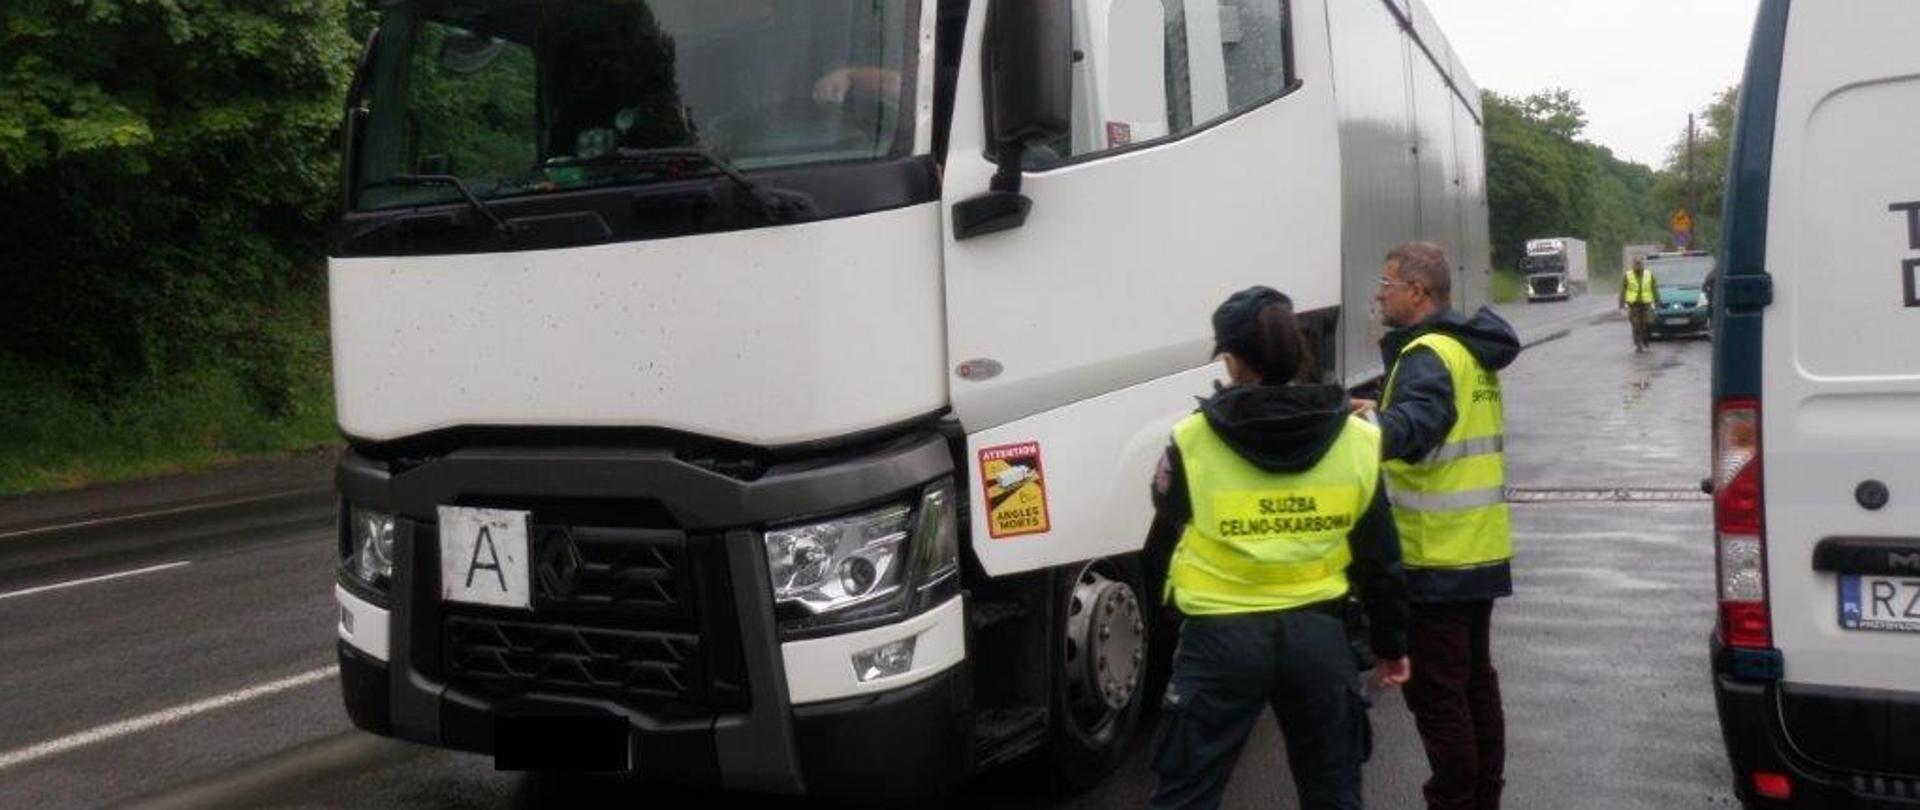 Pracownik Inspekcji Ochrony Środowiska i Służby Celnej stoją przy otwartych drzwiach kontrolowanej ciężarówki.